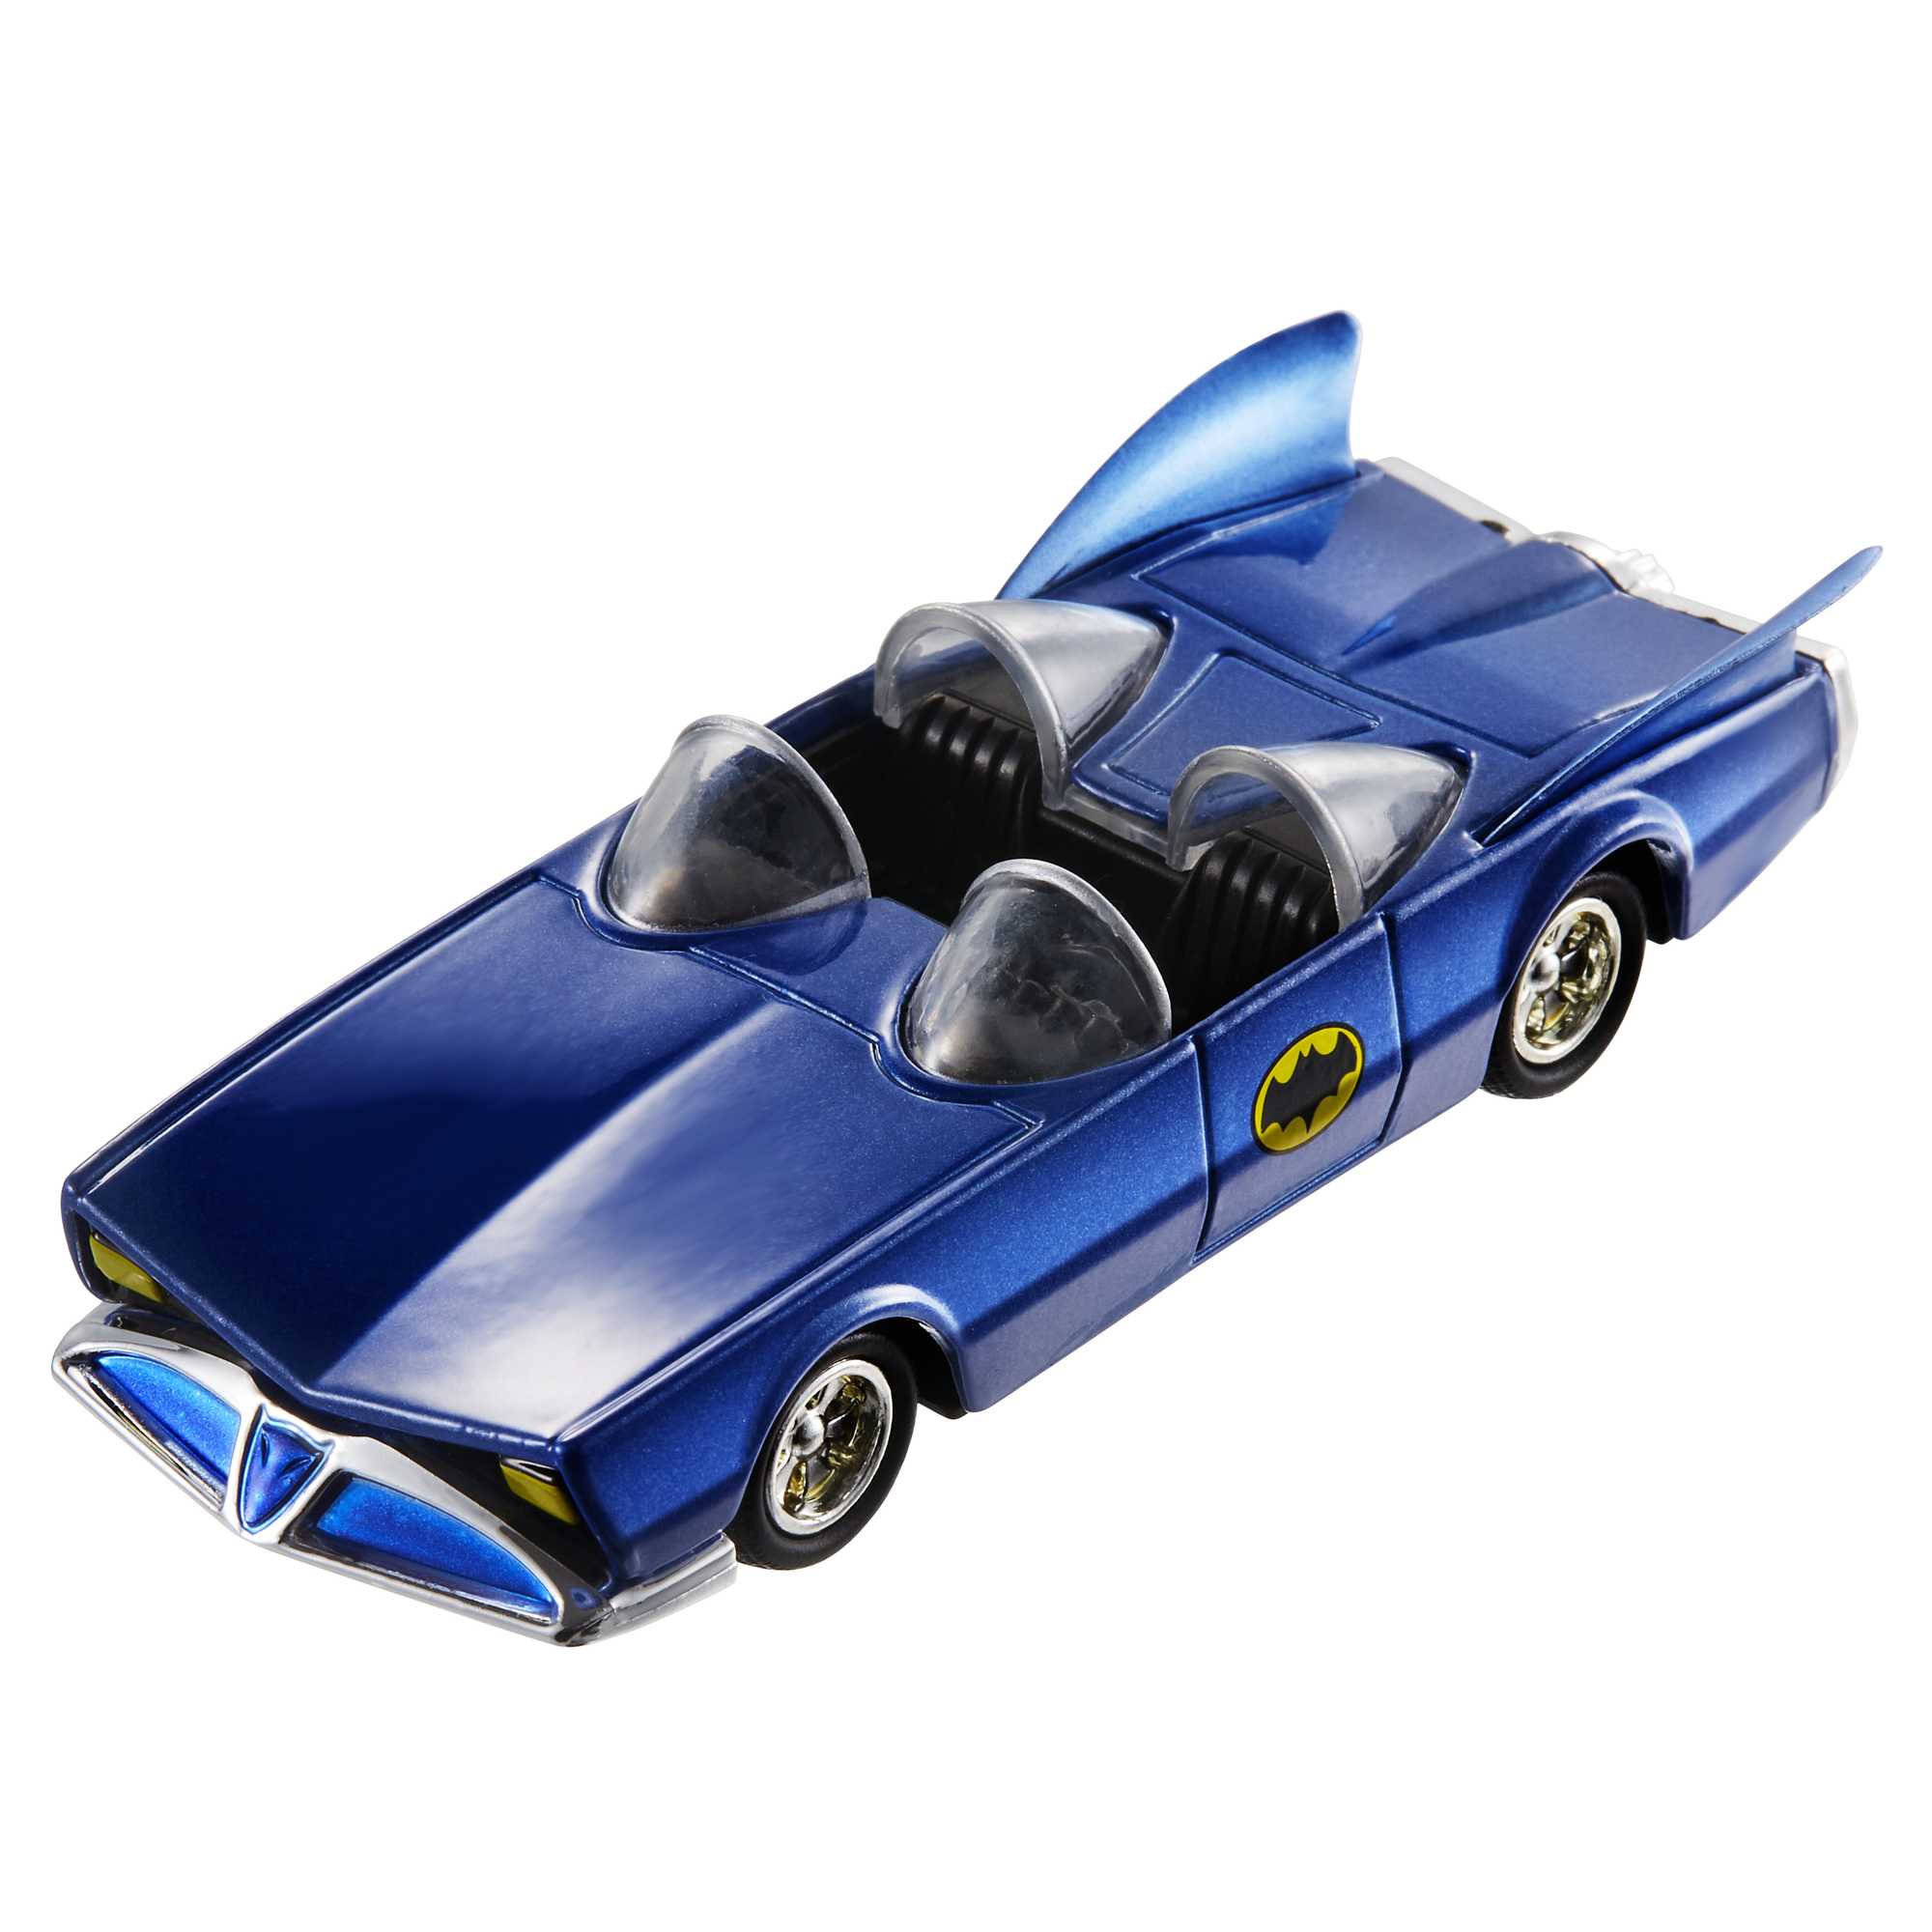 Hot Wheels Batman 1:50 Vehicles, Assorted - Cars, Trucks & Remote Control